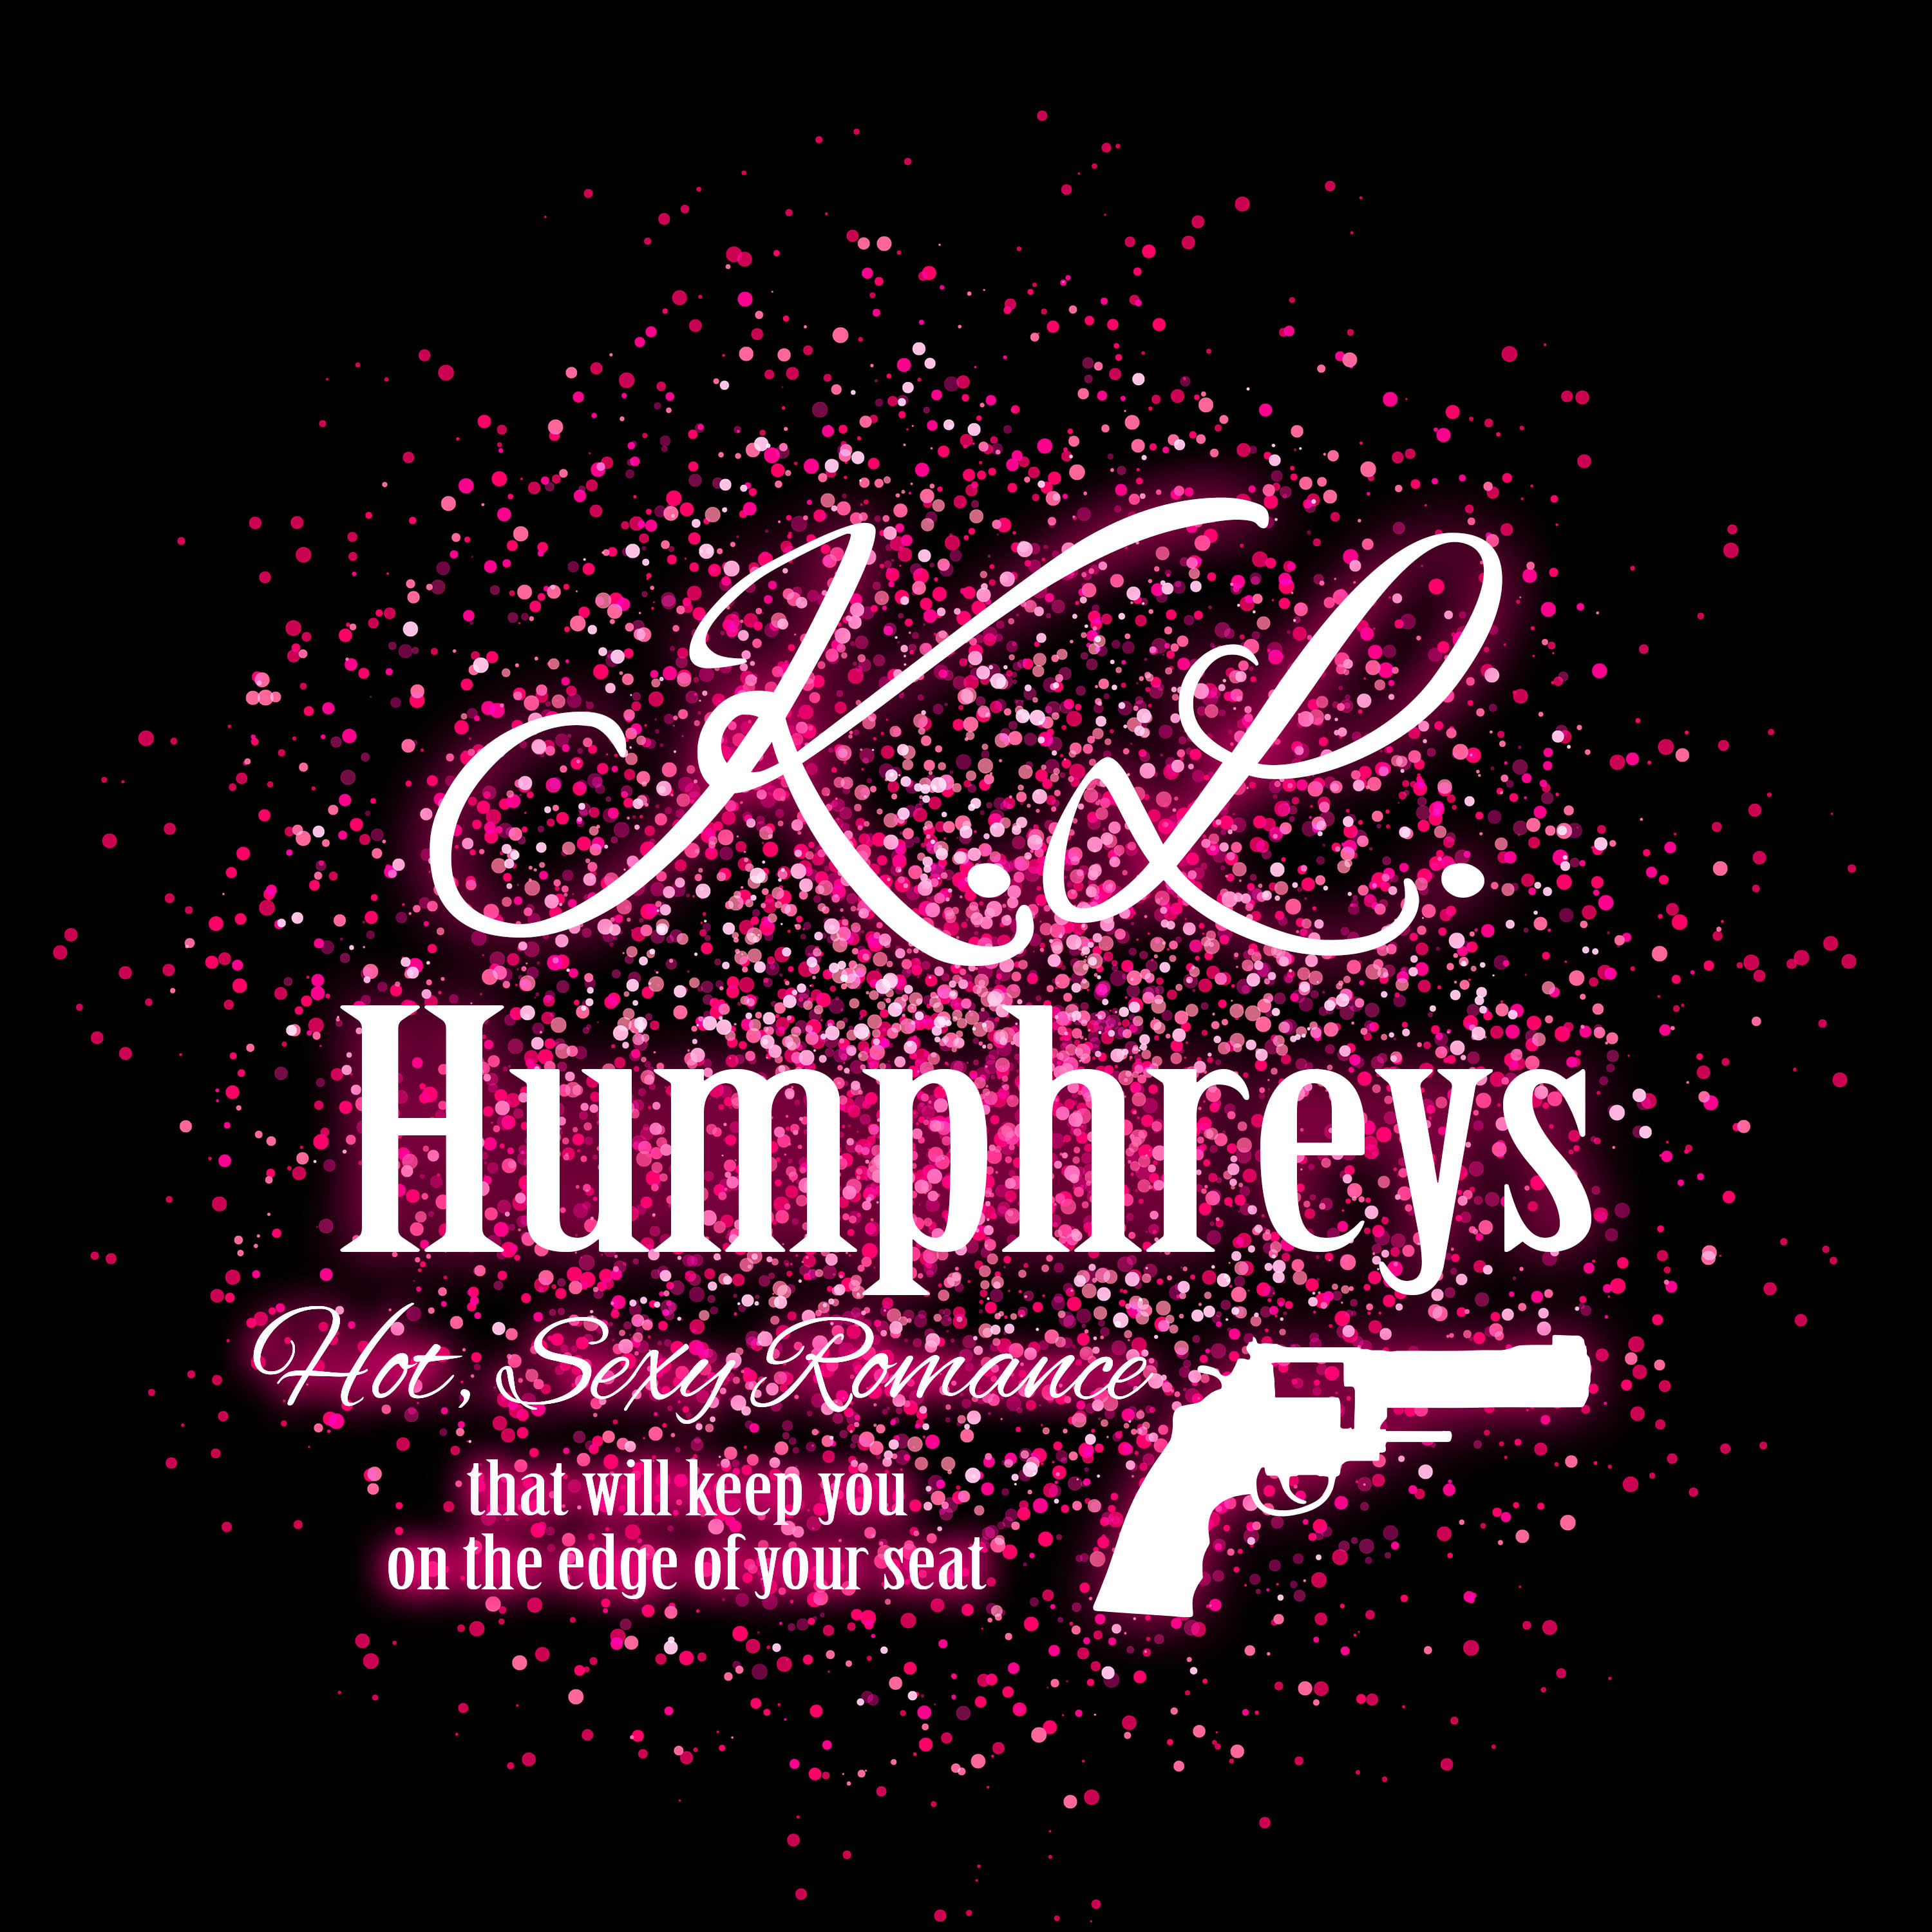 kl-humphreys-logo